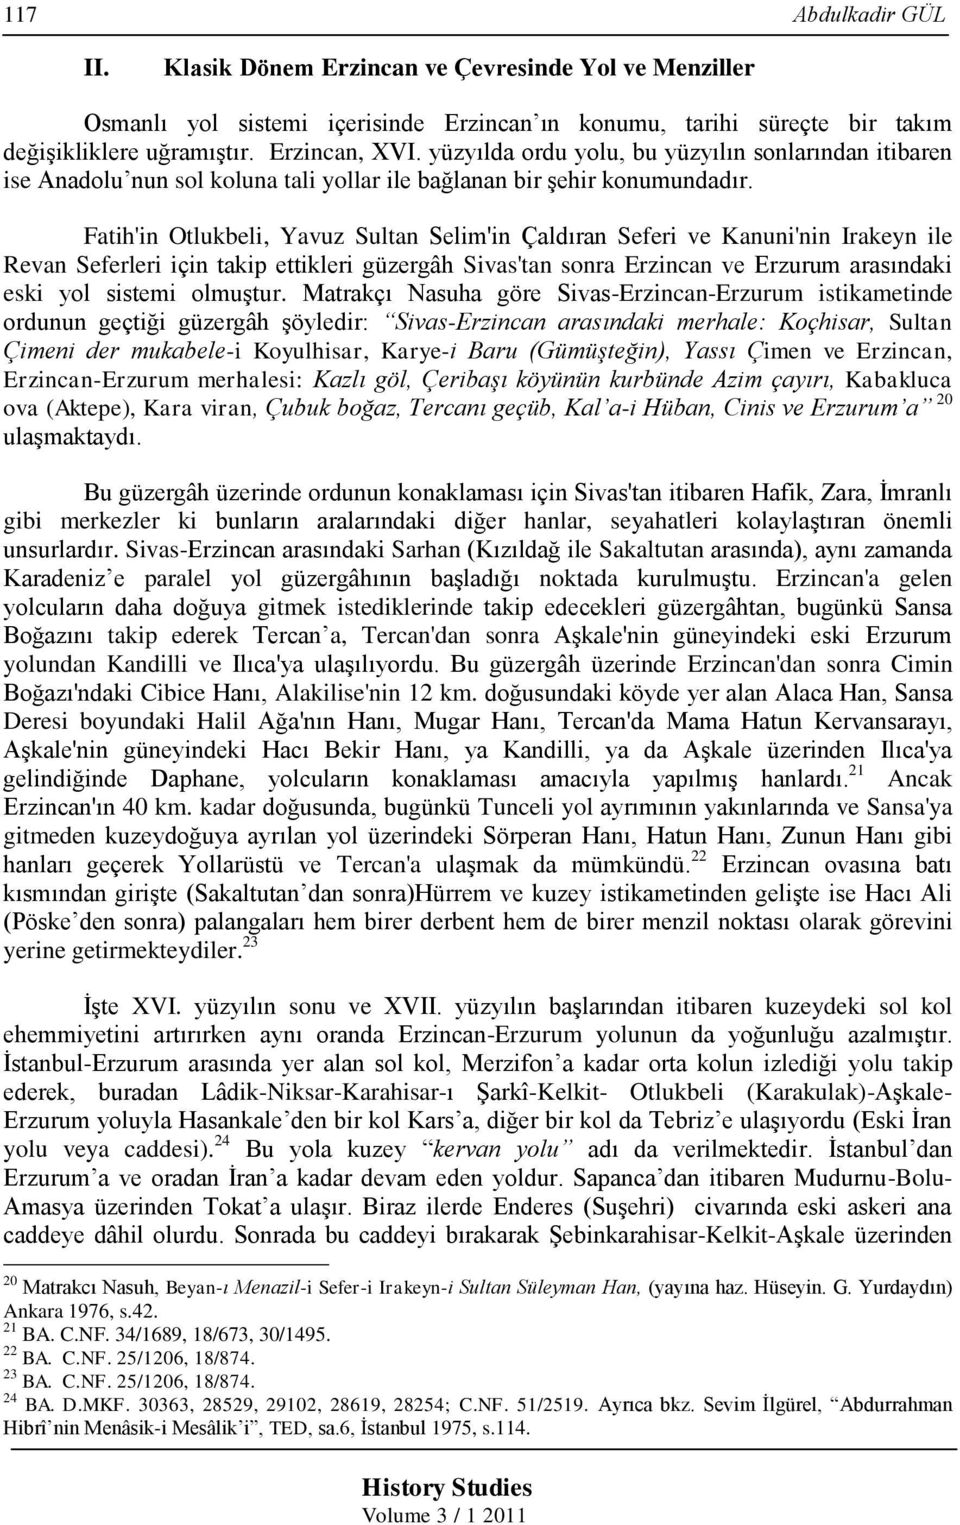 Fatih'in Otlukbeli, Yavuz Sultan Selim'in Çaldıran Seferi ve Kanuni'nin Irakeyn ile Revan Seferleri için takip ettikleri güzergâh Sivas'tan sonra Erzincan ve Erzurum arasındaki eski yol sistemi